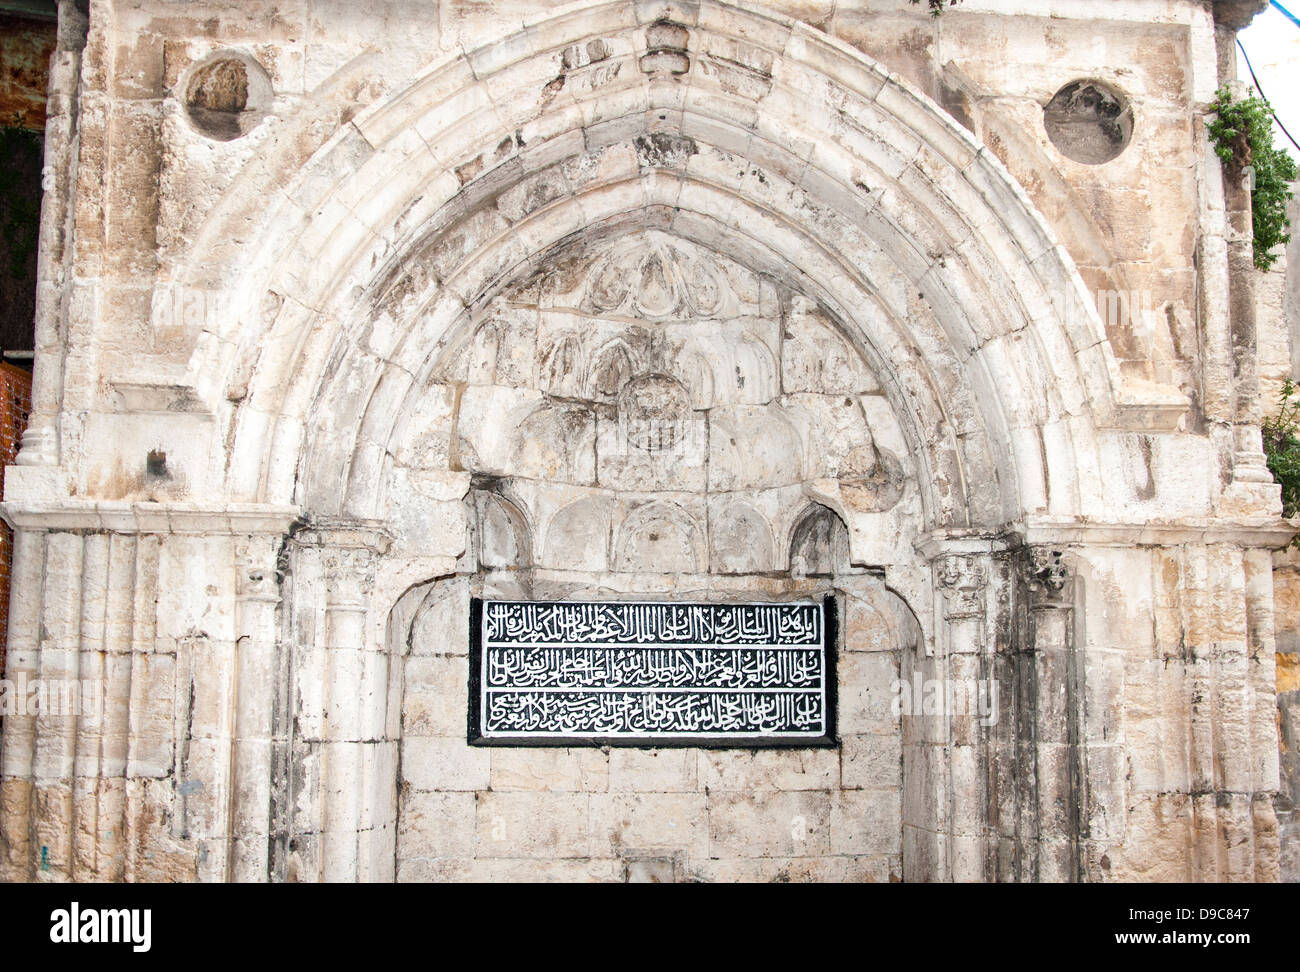 Architektonisches Detail von einem Archade mit arabischer Inschrift in der Altstadt von Jerusalem. Stockfoto